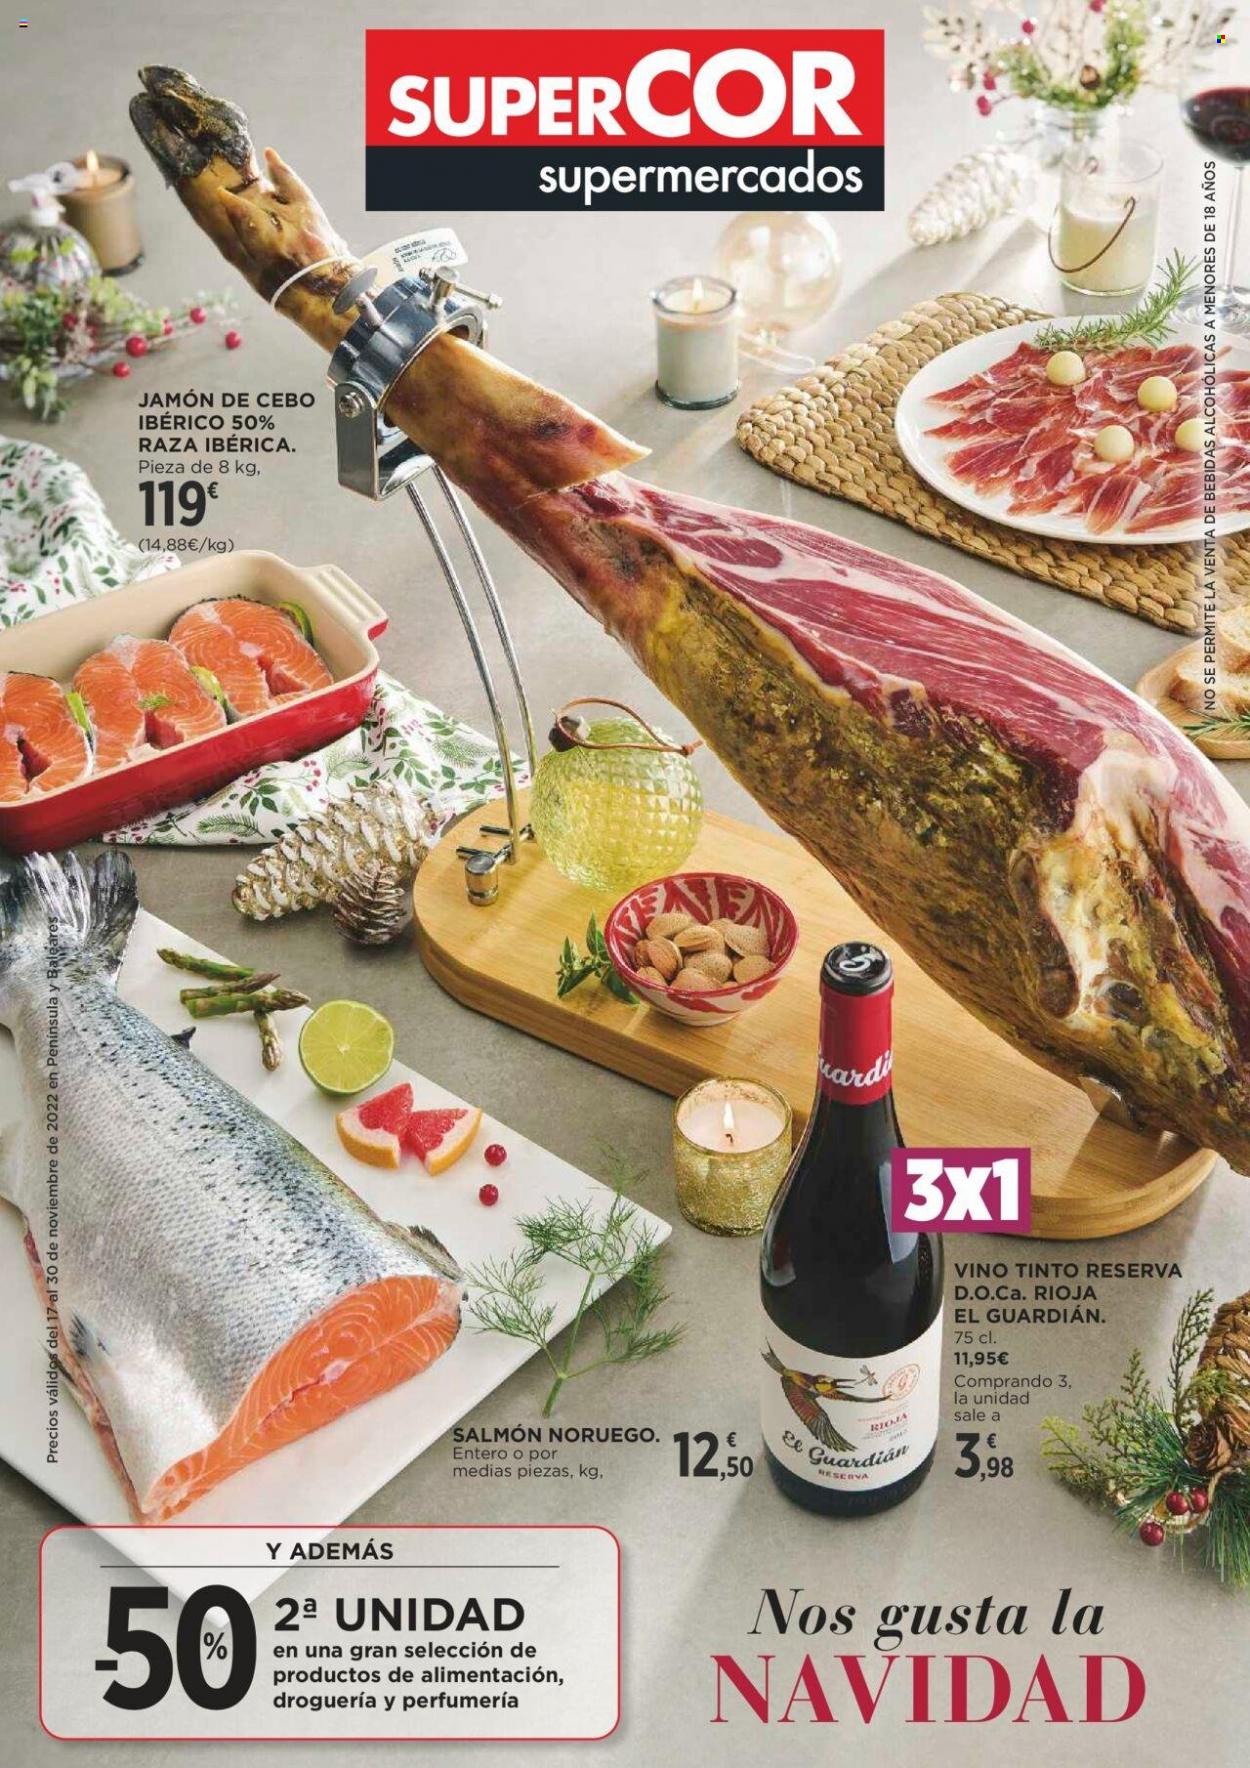 thumbnail - Folleto actual Supercor supermercados - 17/11/22 - 30/11/22 - Ventas - salmón, jamón, jamón ibérico, vino tinto, Rioja. Página 1.